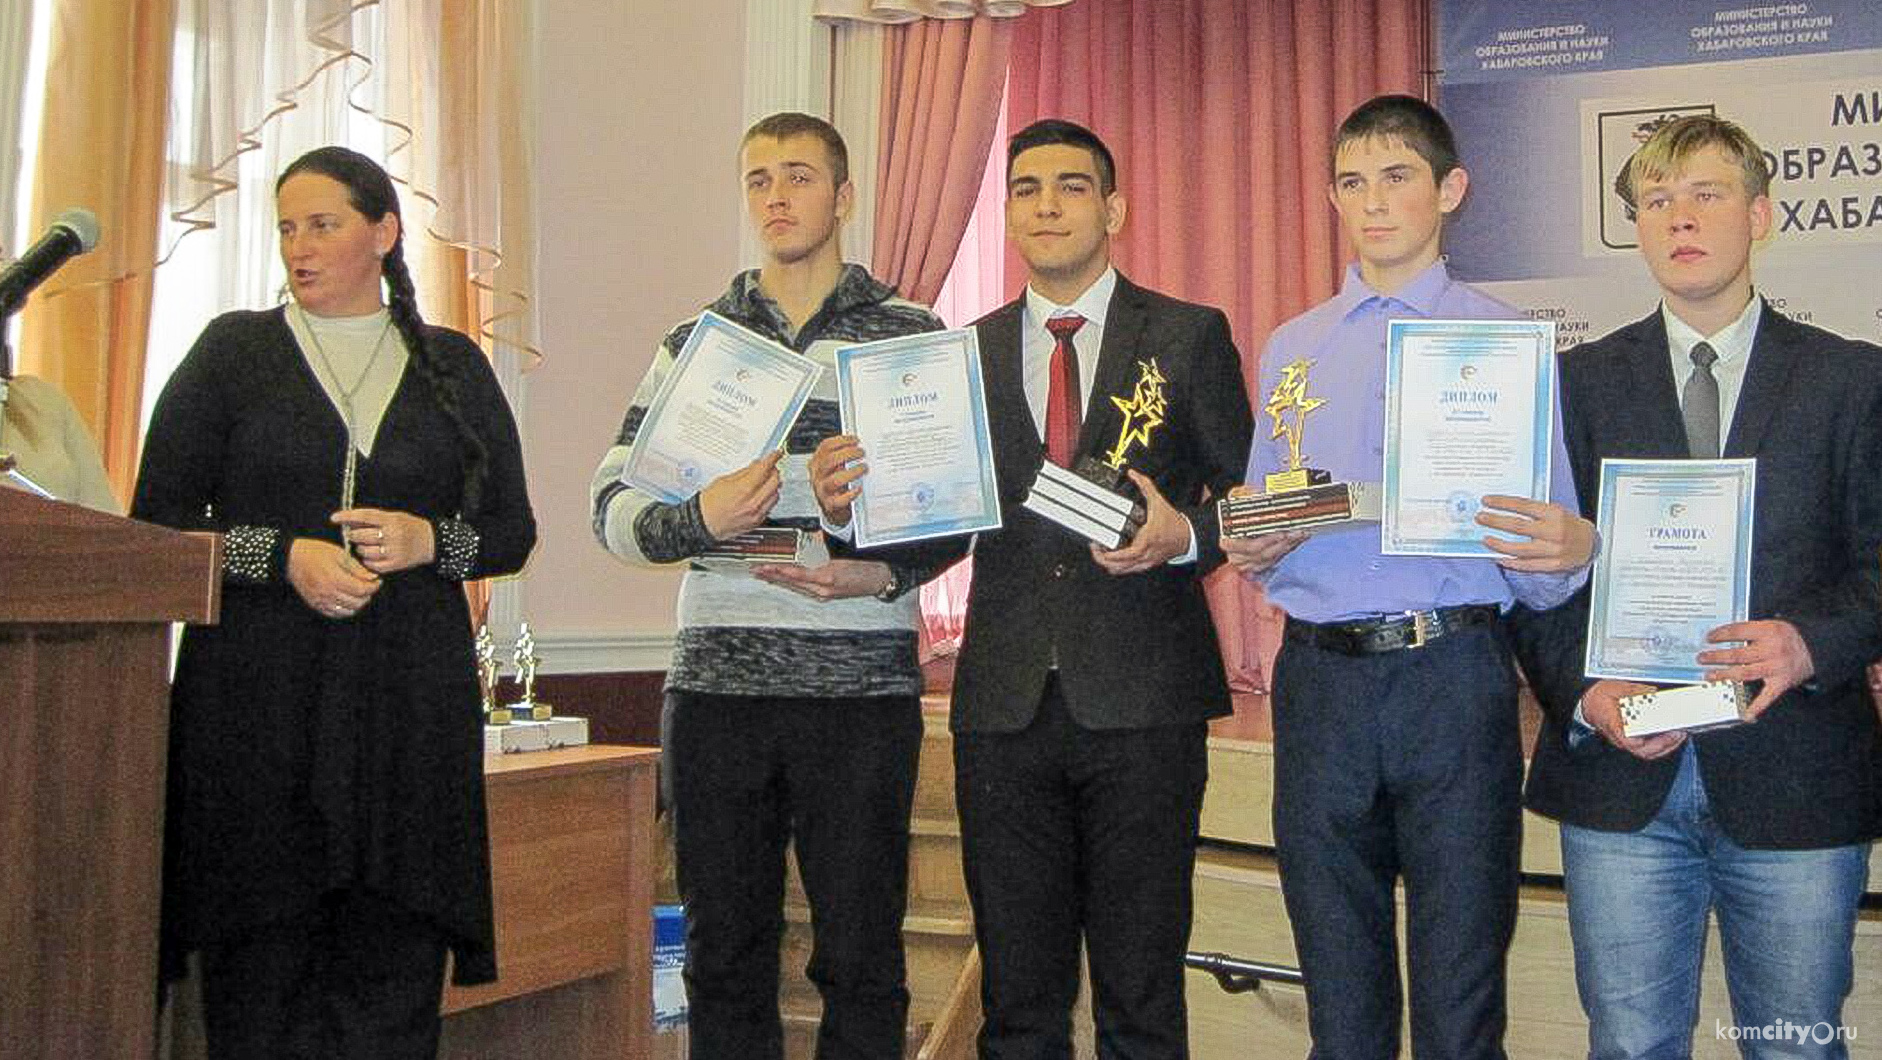 Проект о герое А. Маресьеве принёс одиннадцатикласснику Руслану Слупскому победу на краевой конференции